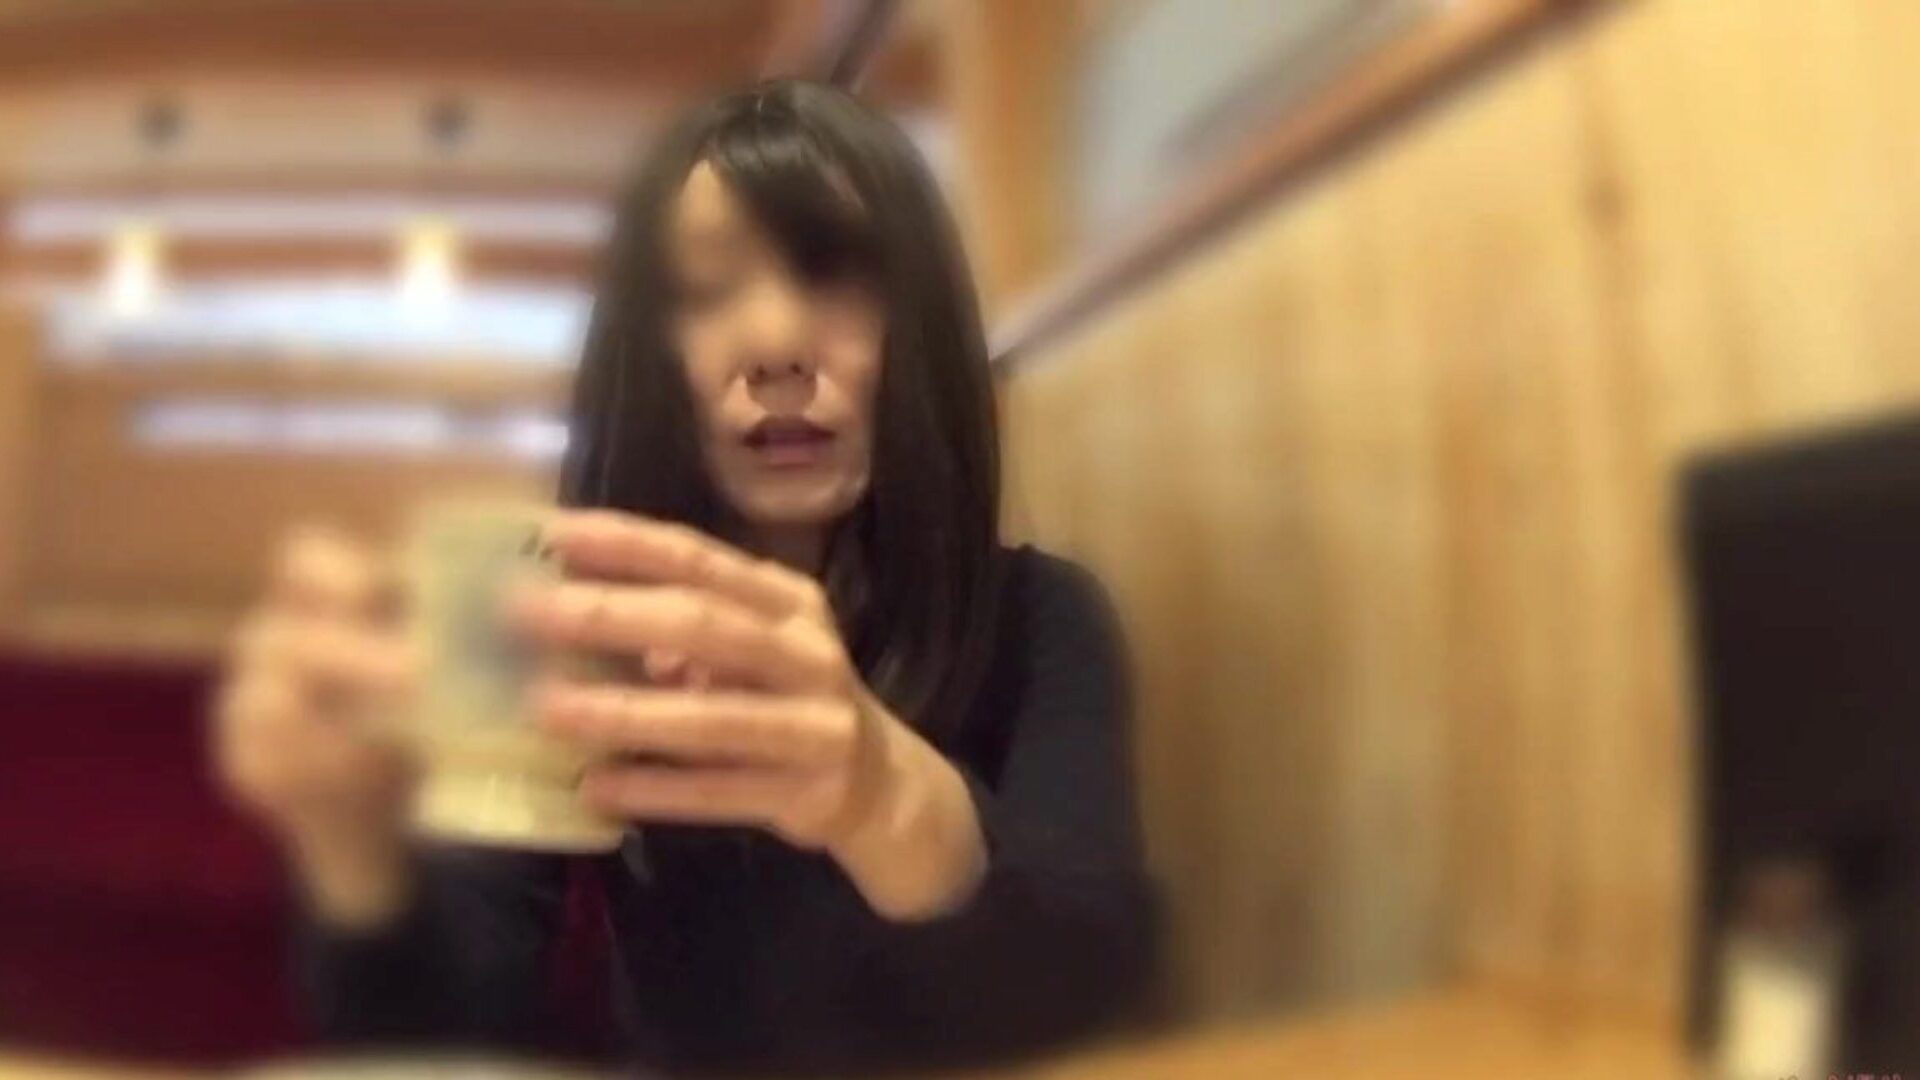 cuckold fru tog av sig sina trosor på caféet: gratis porr 60 se cuckold fru tog av sig sina trosor i caféet video på xhamster - den ultimata uppskattningen av gratis asiatisk japansk hd gonzo porrrör videor